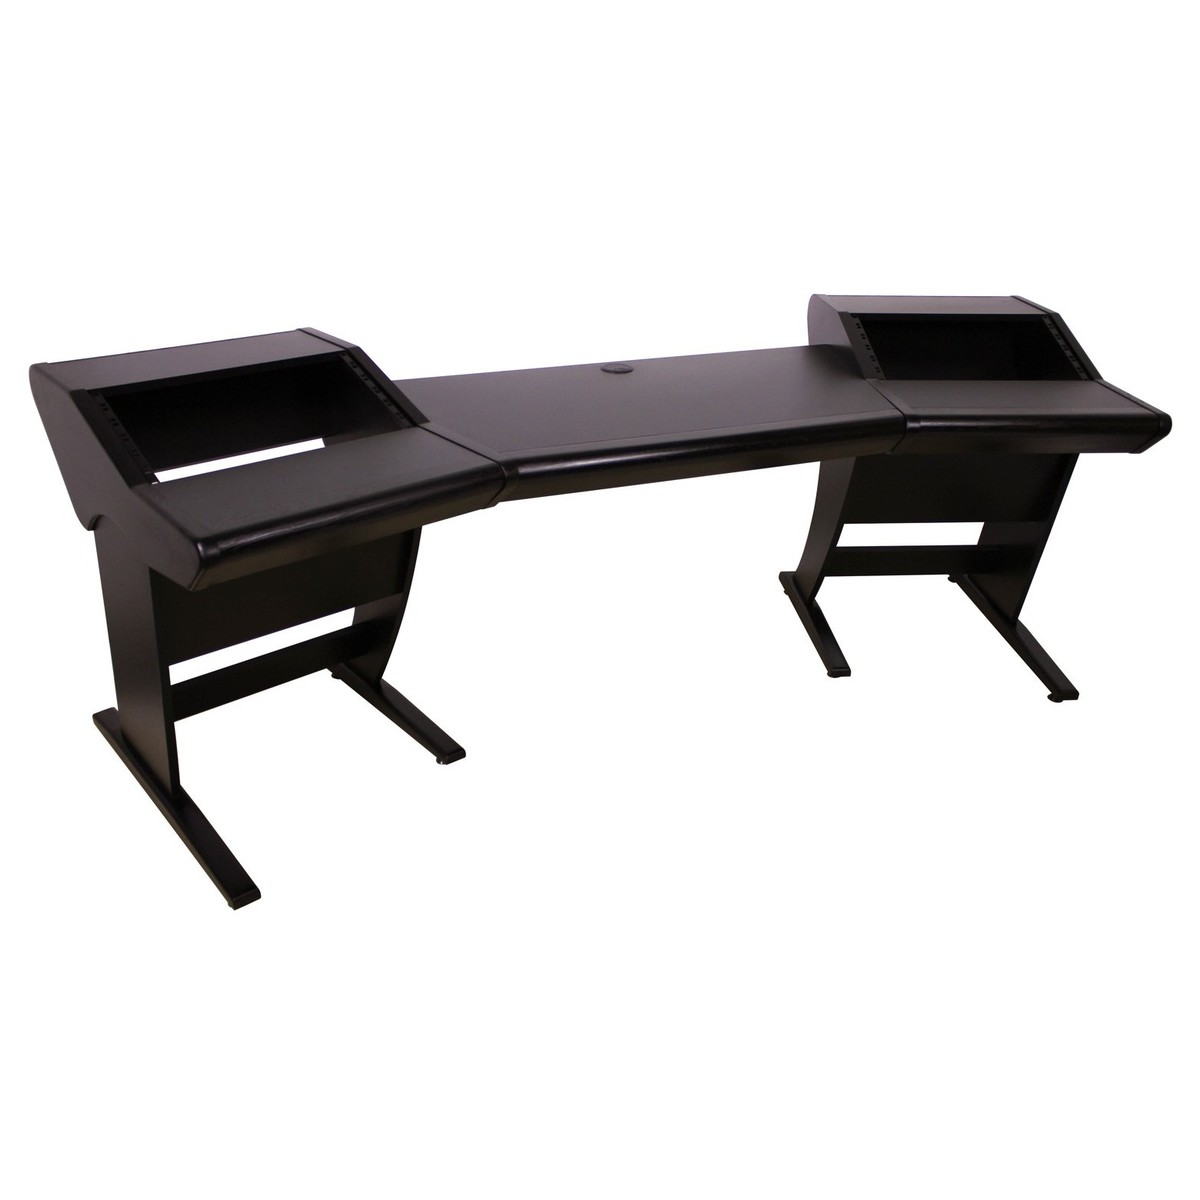 Zaor ONDA Studio Desk, Angled, Black - Angled. Loading zoom · Zaor ONDA Studio  Desk